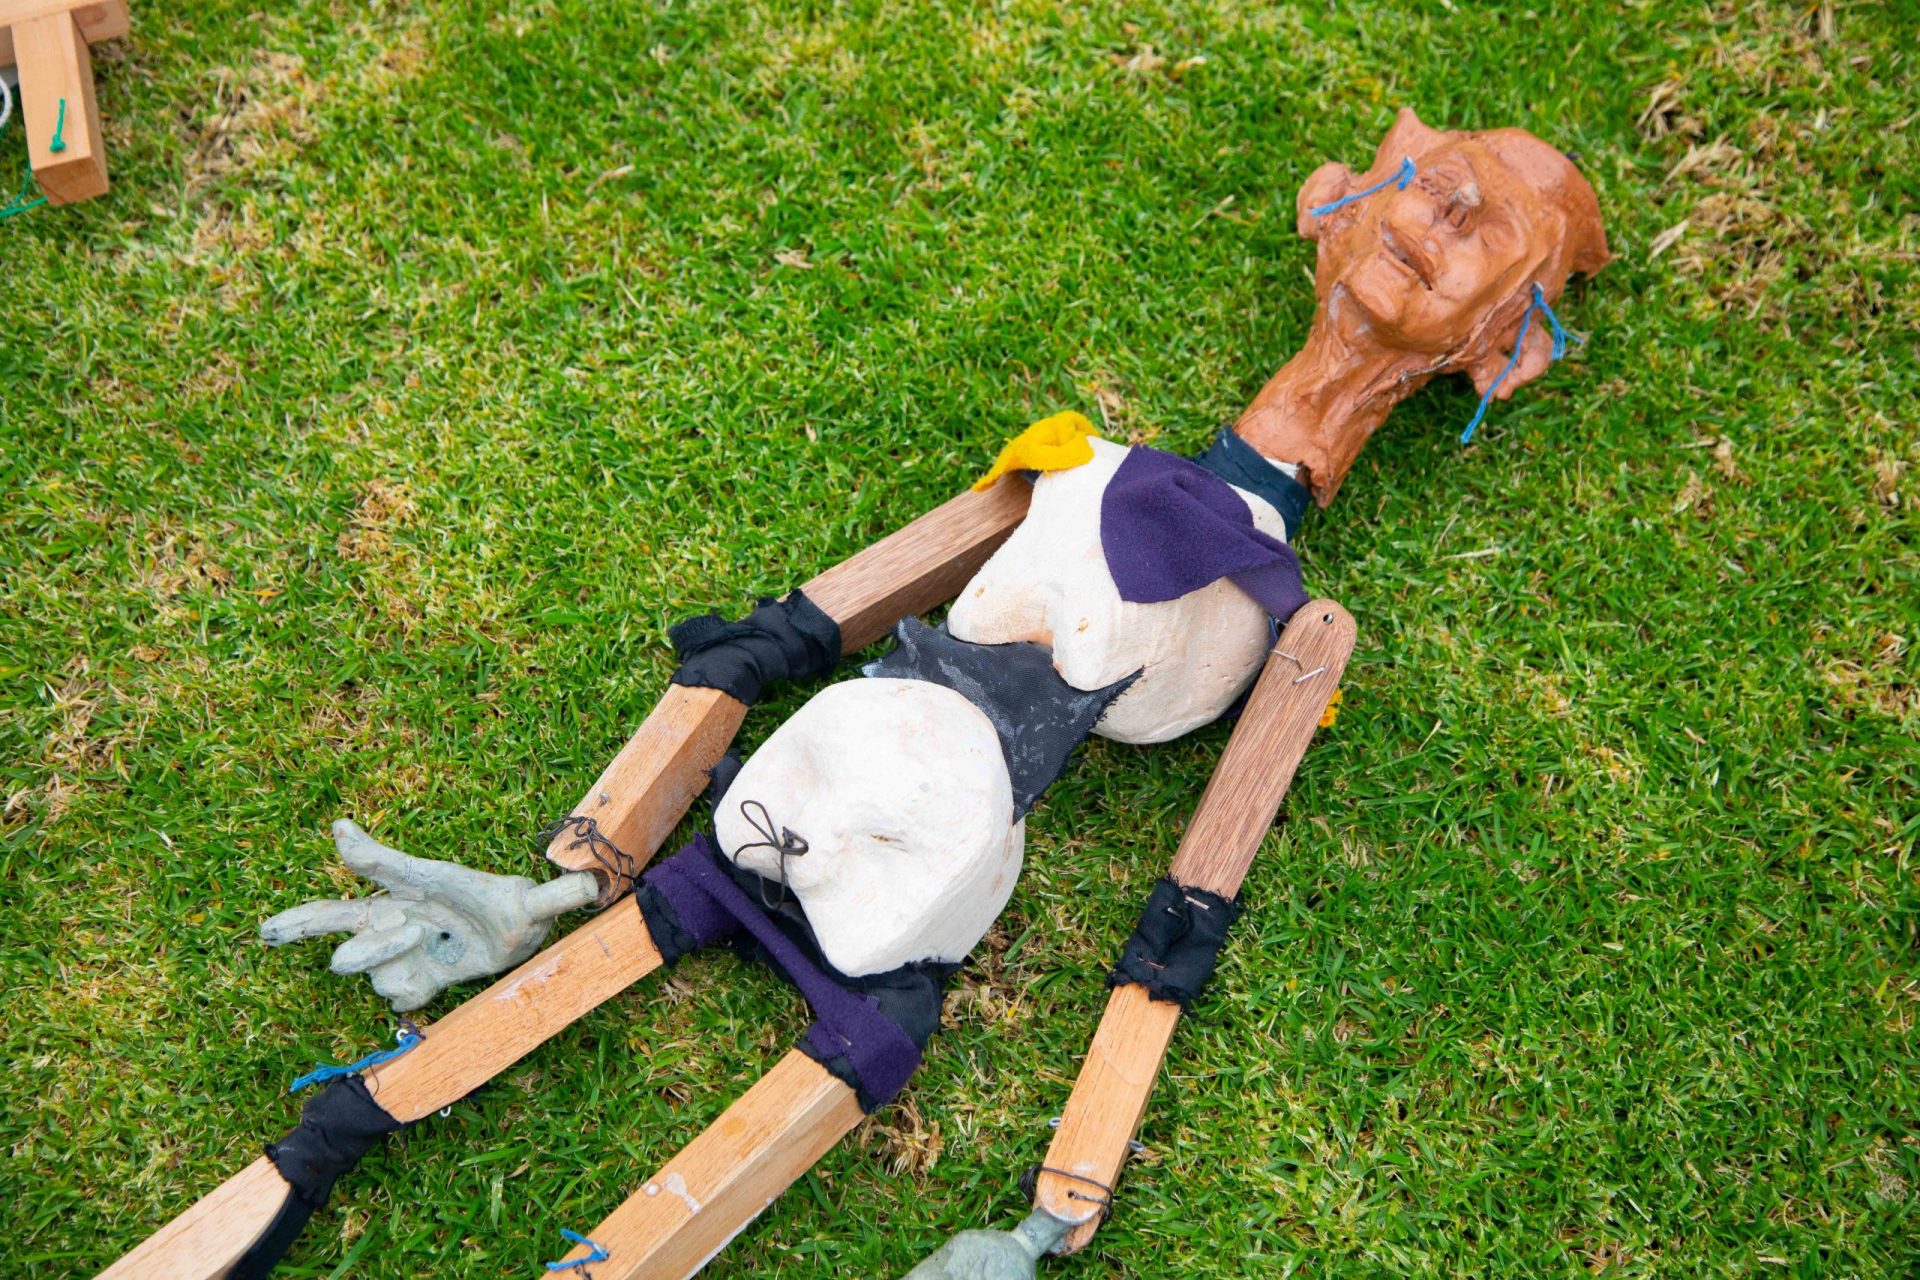 Taller de títeres, marionetas y muñecos. Una clase del Departamento de Arte de la Universidad de los Andes